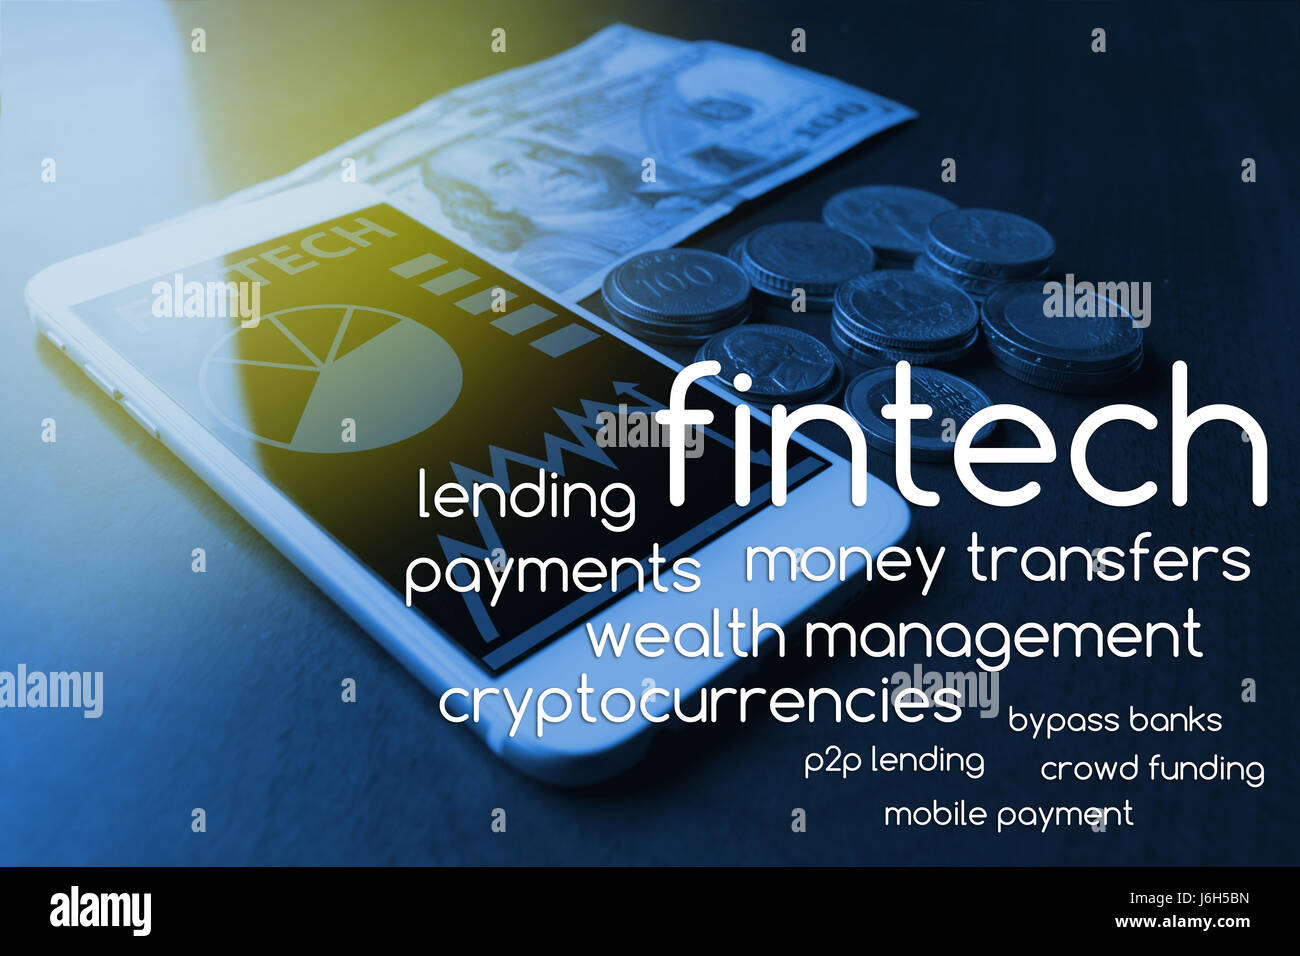 La technologie de l'Internet financier Investissement Fintech Concept. Texte par téléphone mobile et de l'argent , monde , ton bleu lumière torche Banque D'Images